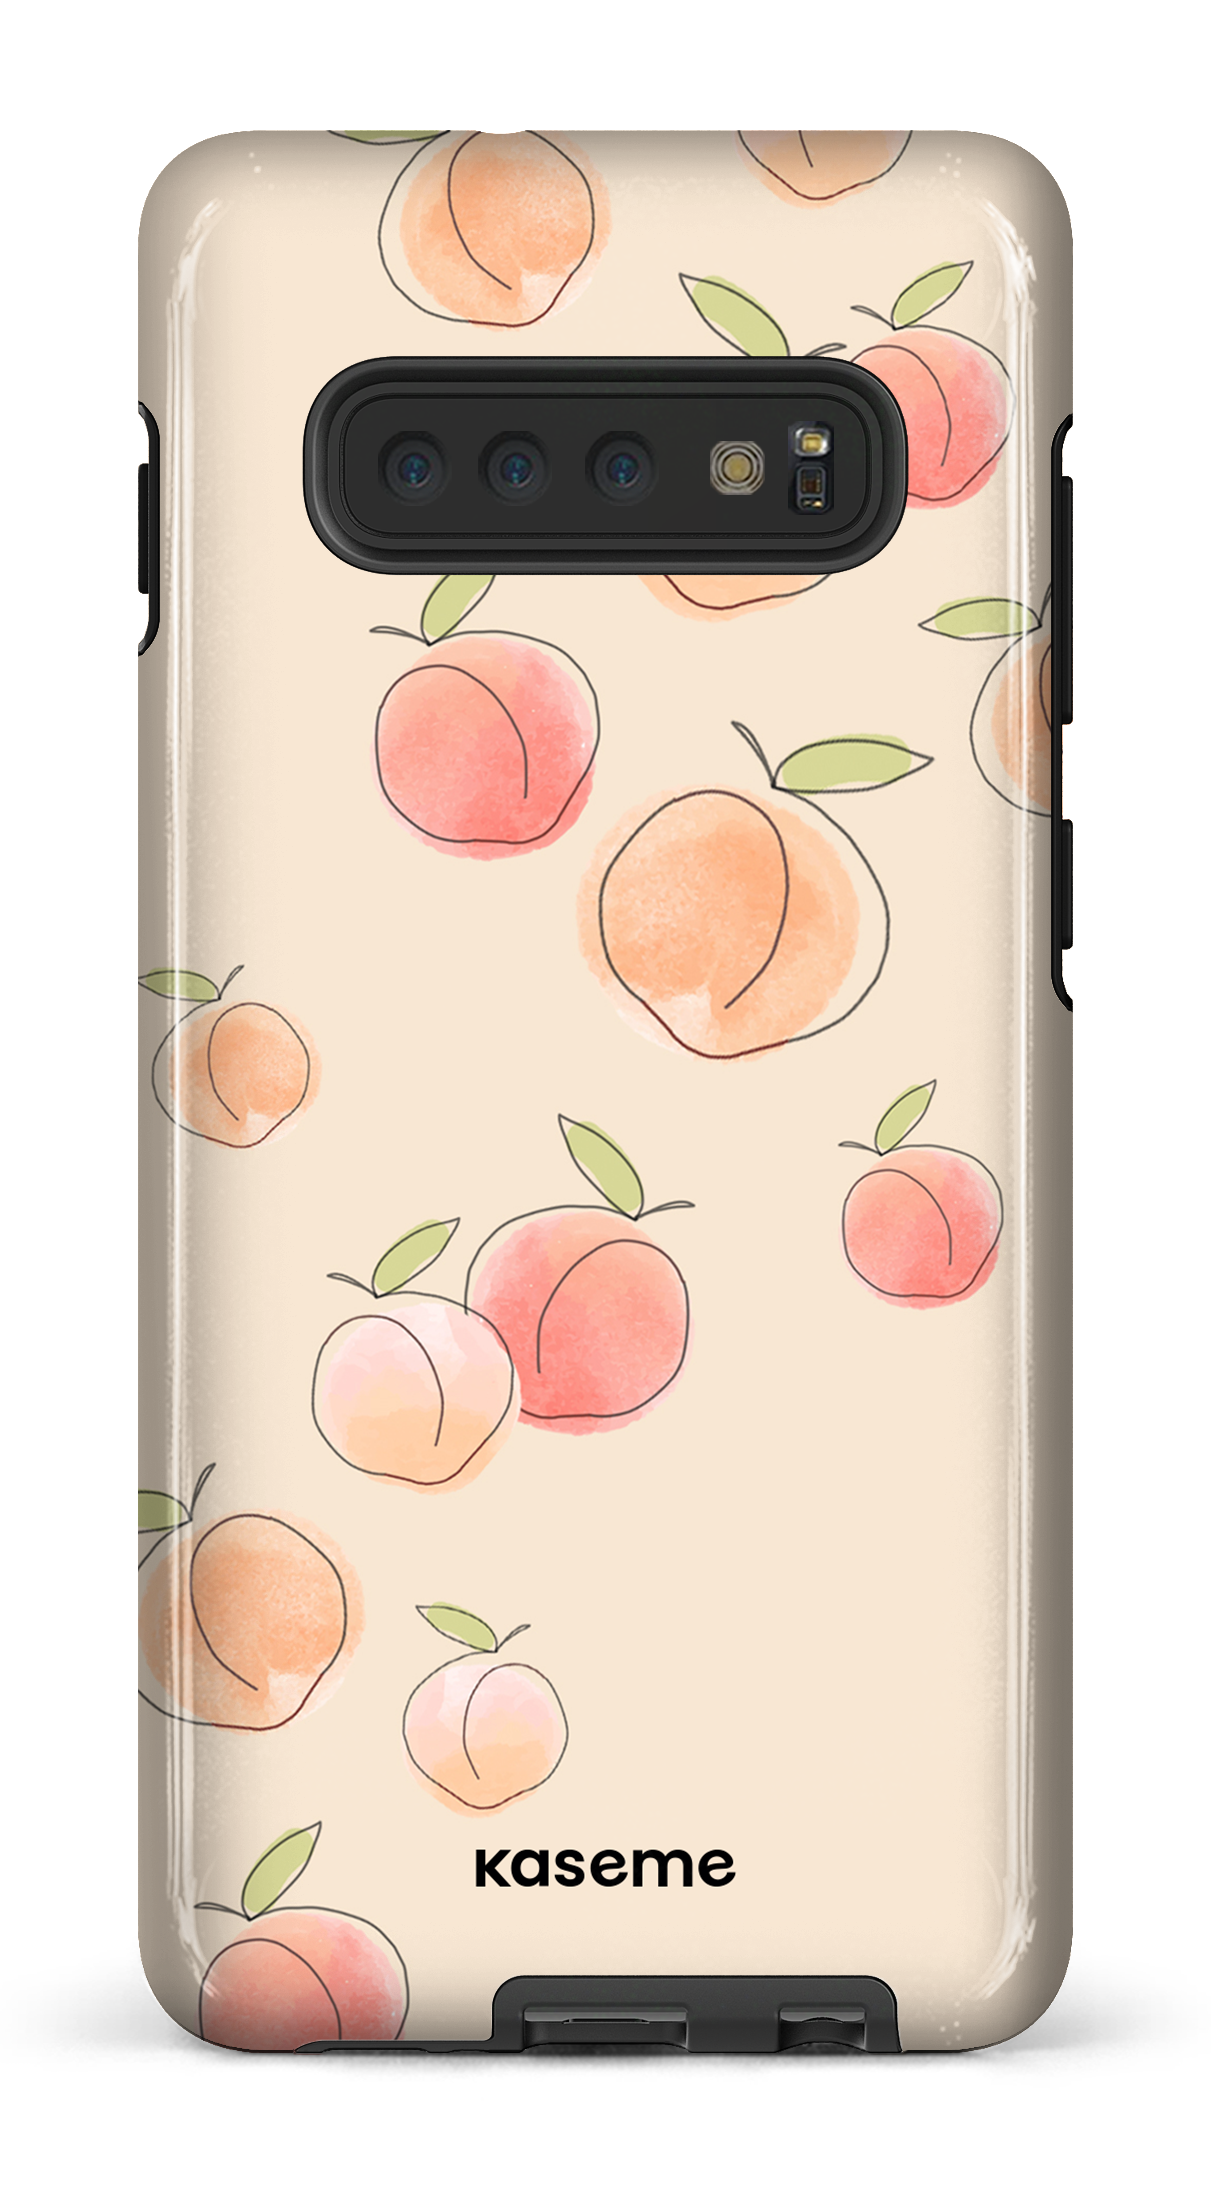 Peachy - Galaxy S10 Plus